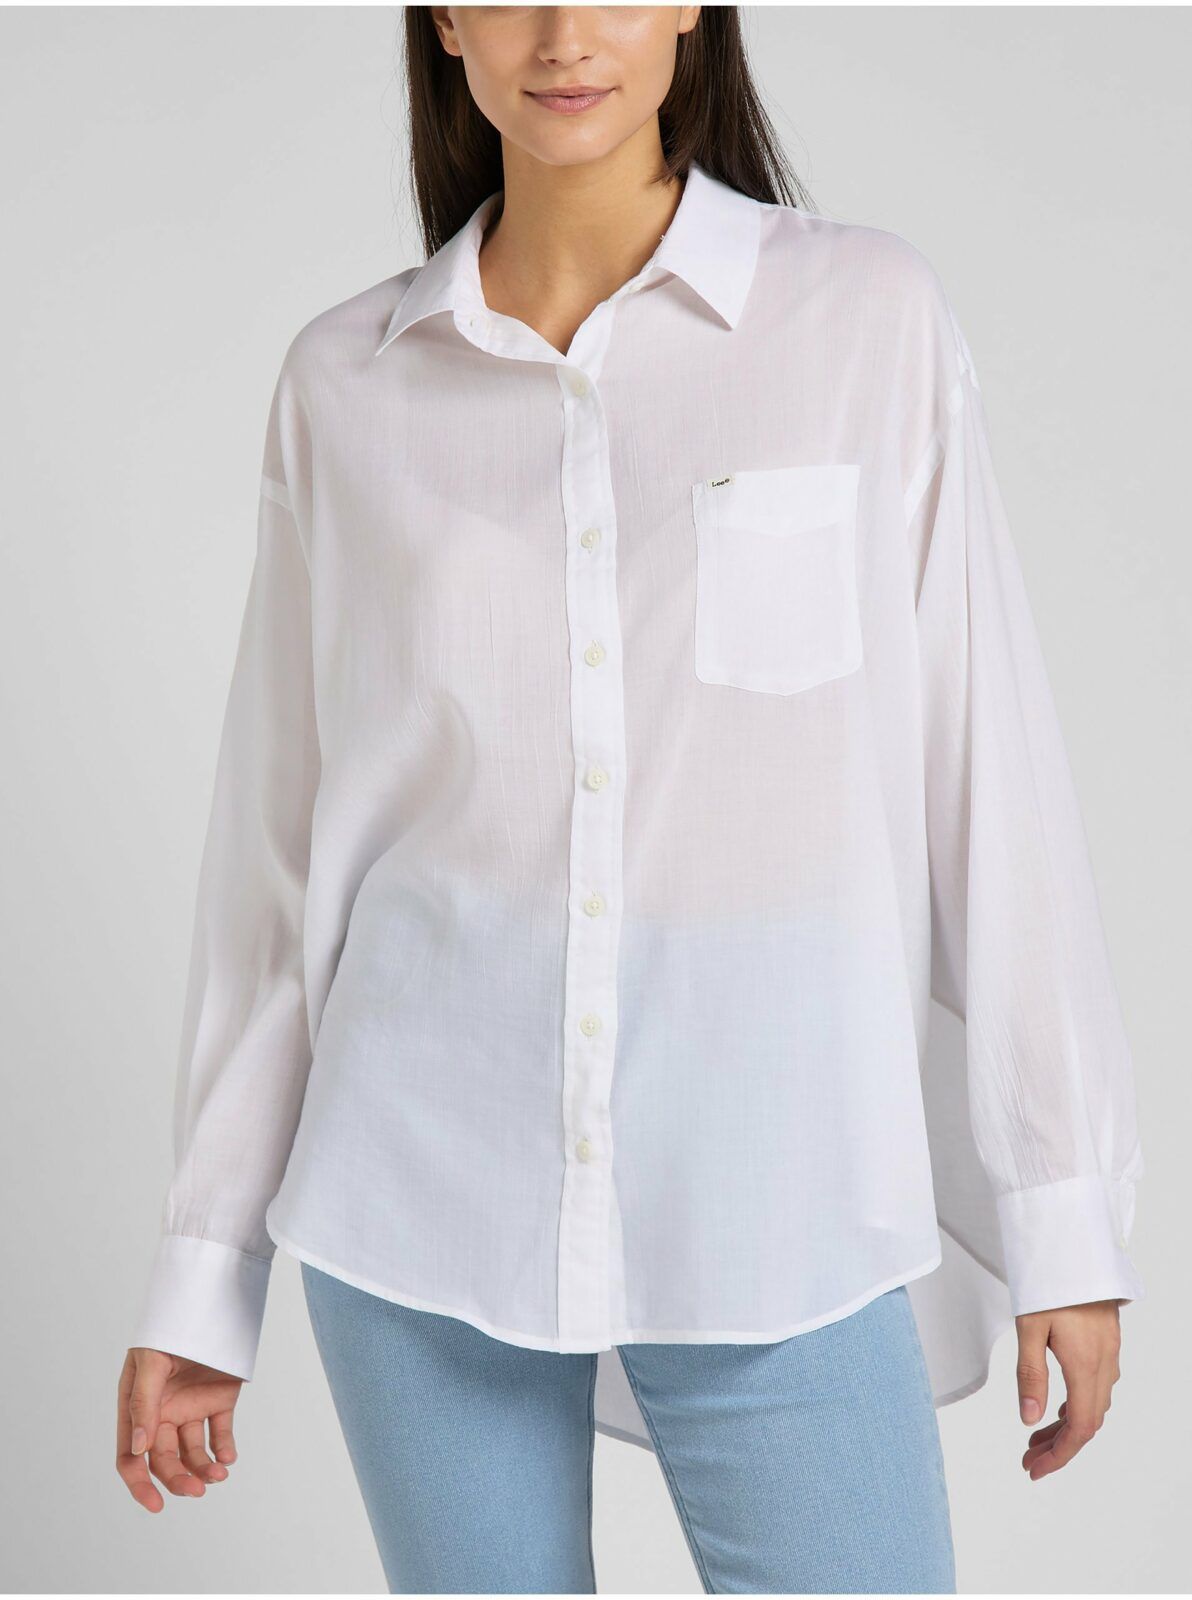 Bílá dámská volná košile s prodlouženou zadní